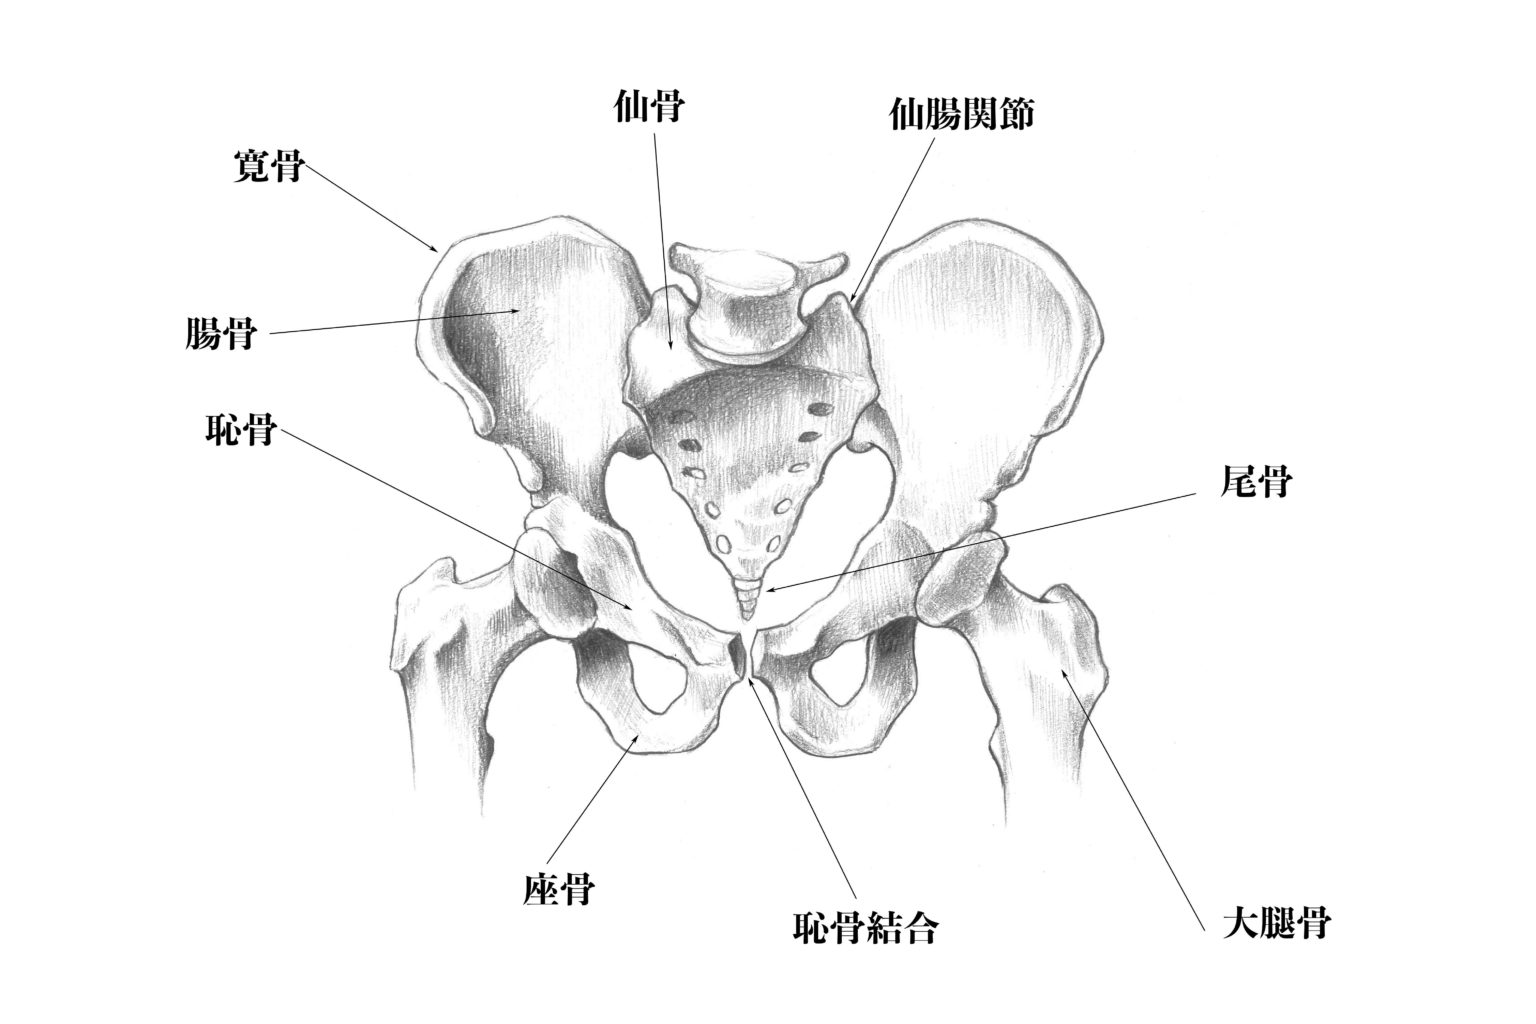 【基礎から学ぶ】骨の形状分類【解剖学】 - PTOT国家試験対策ブログ